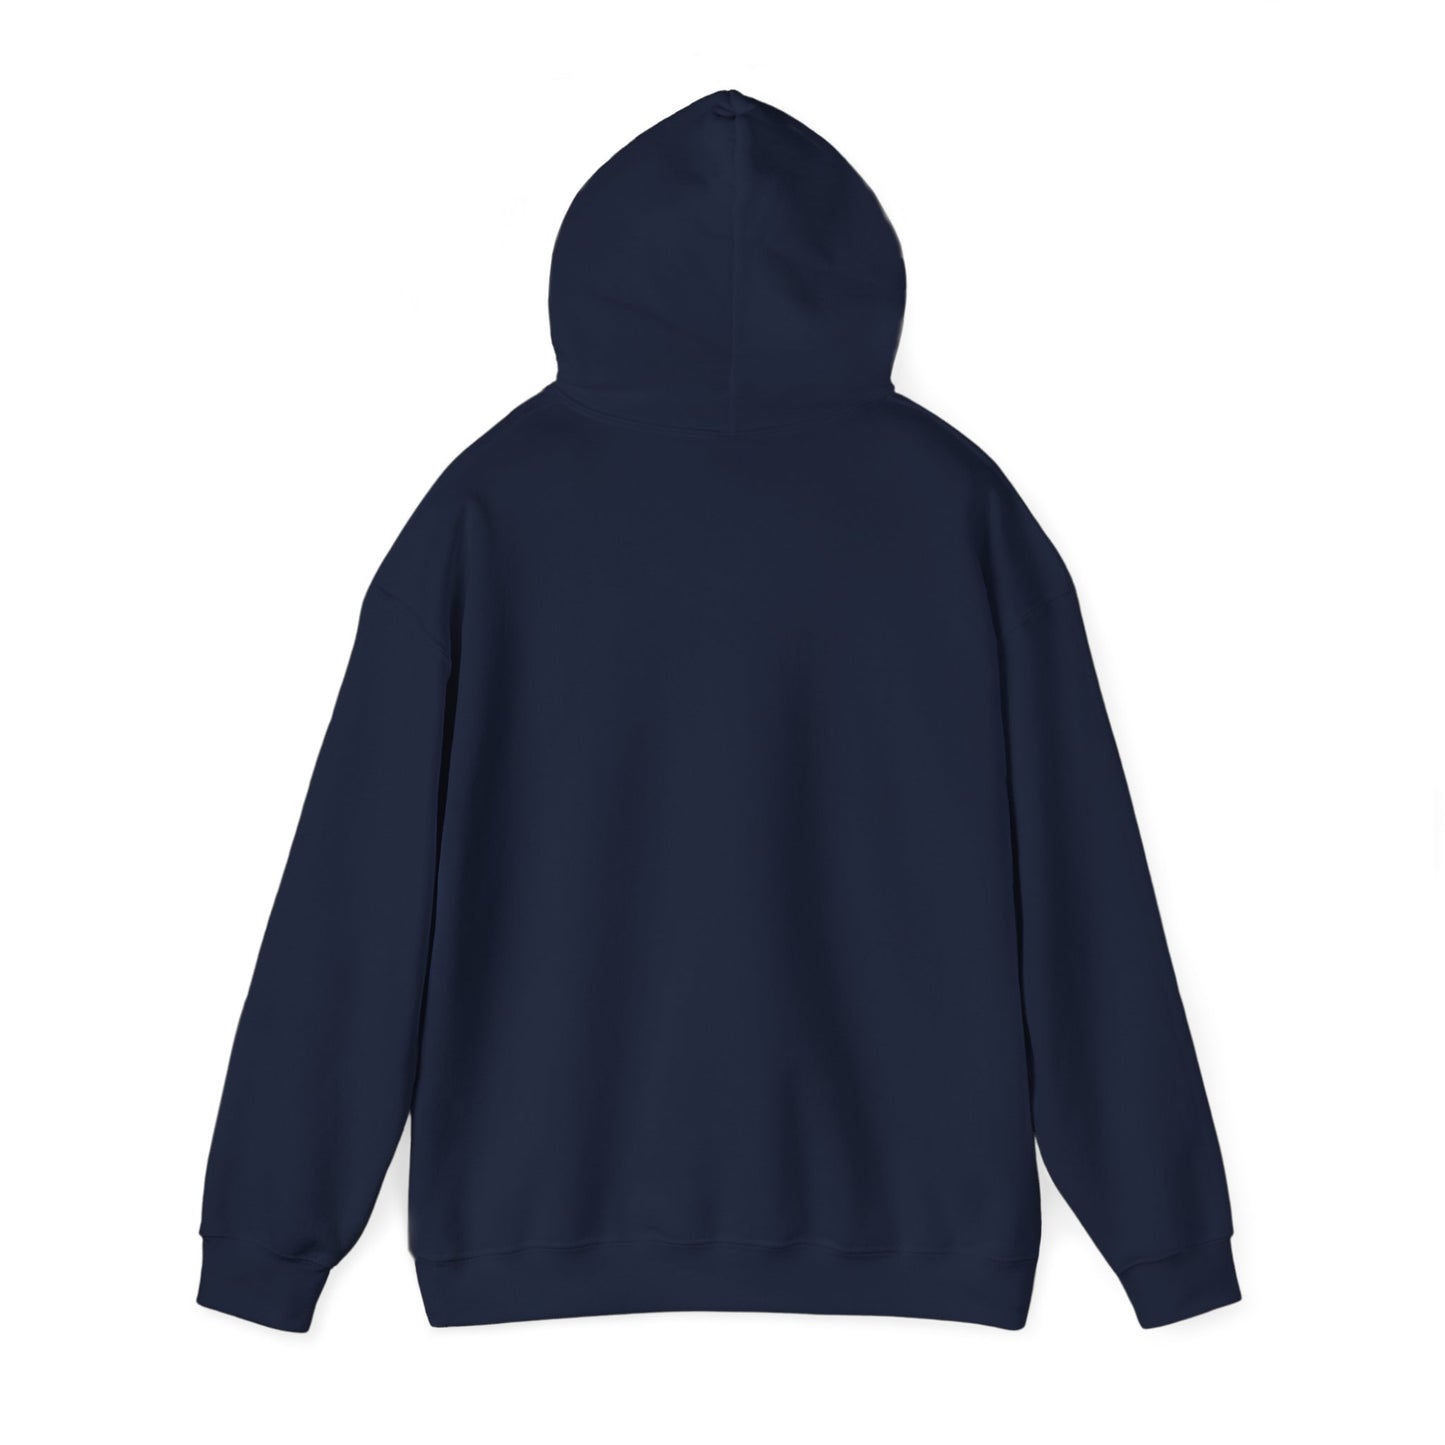 Centennial - Men's Heavy Blend Hooded Sweatshirt - Class Of 2024